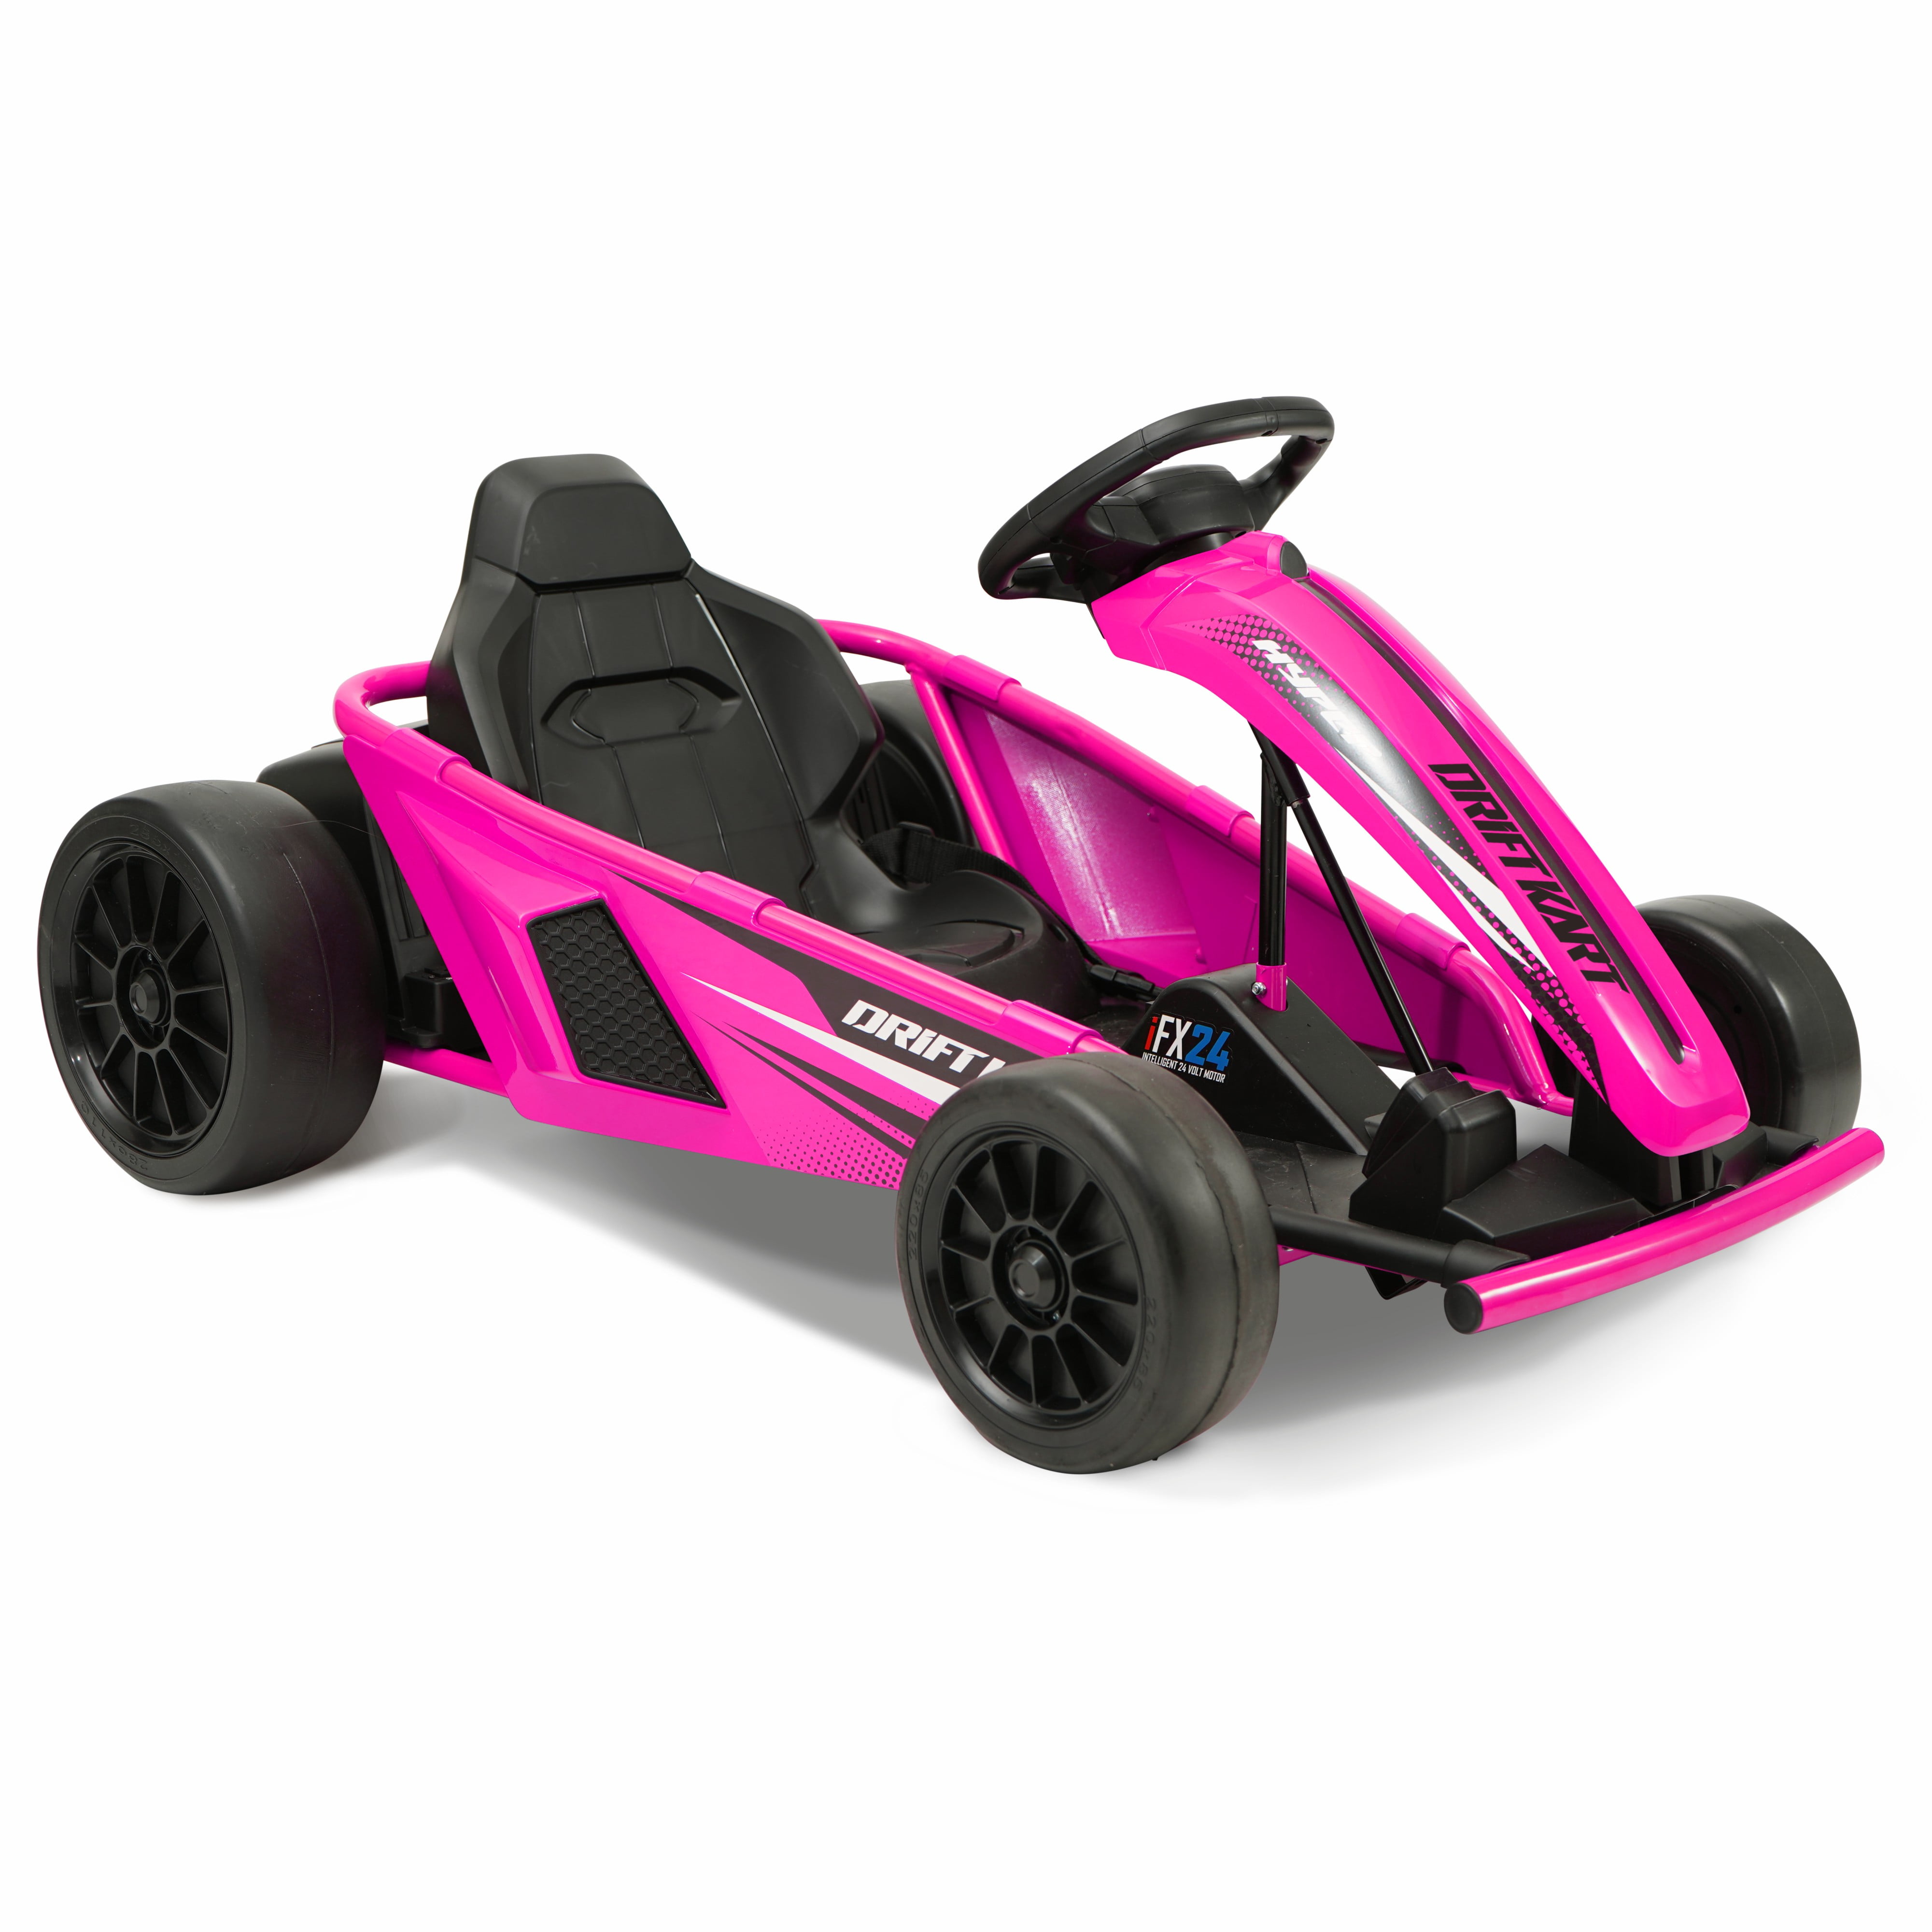 Hyper Toys 24V Kart Ride On, Green - Walmart.com